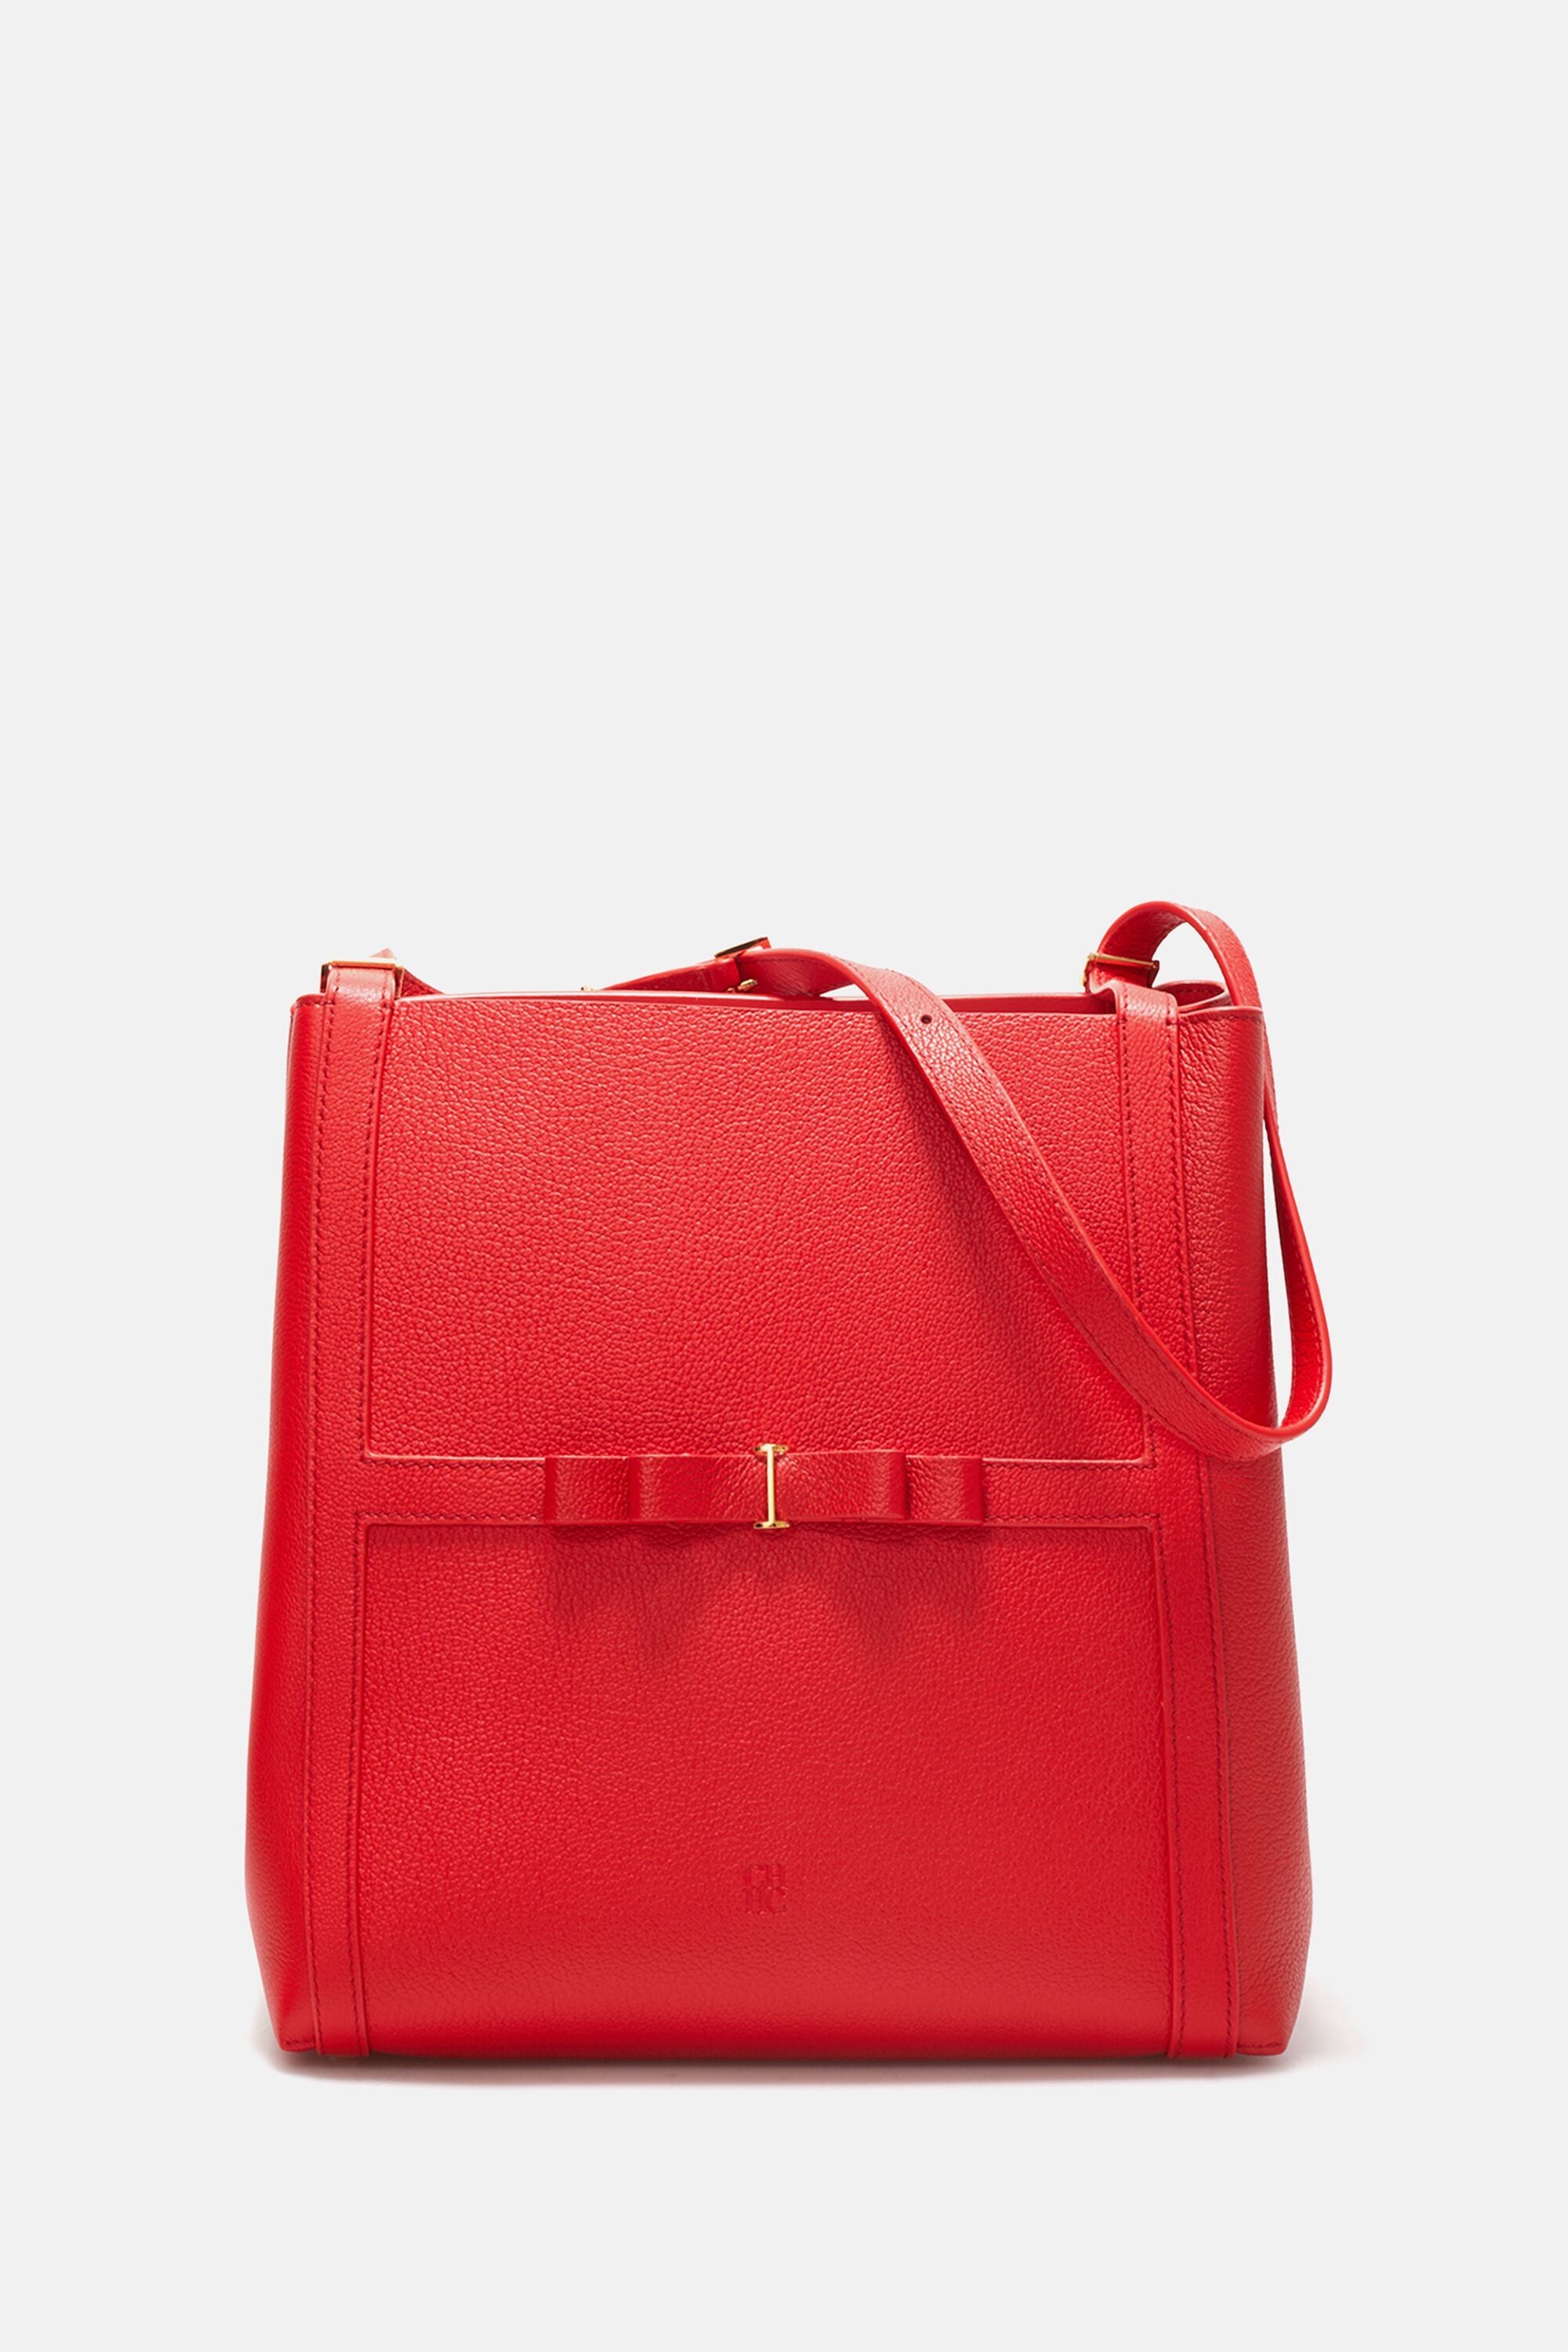 Women Vegan Leather Red Handbag - Let's Get Lost Design - DOGO Store